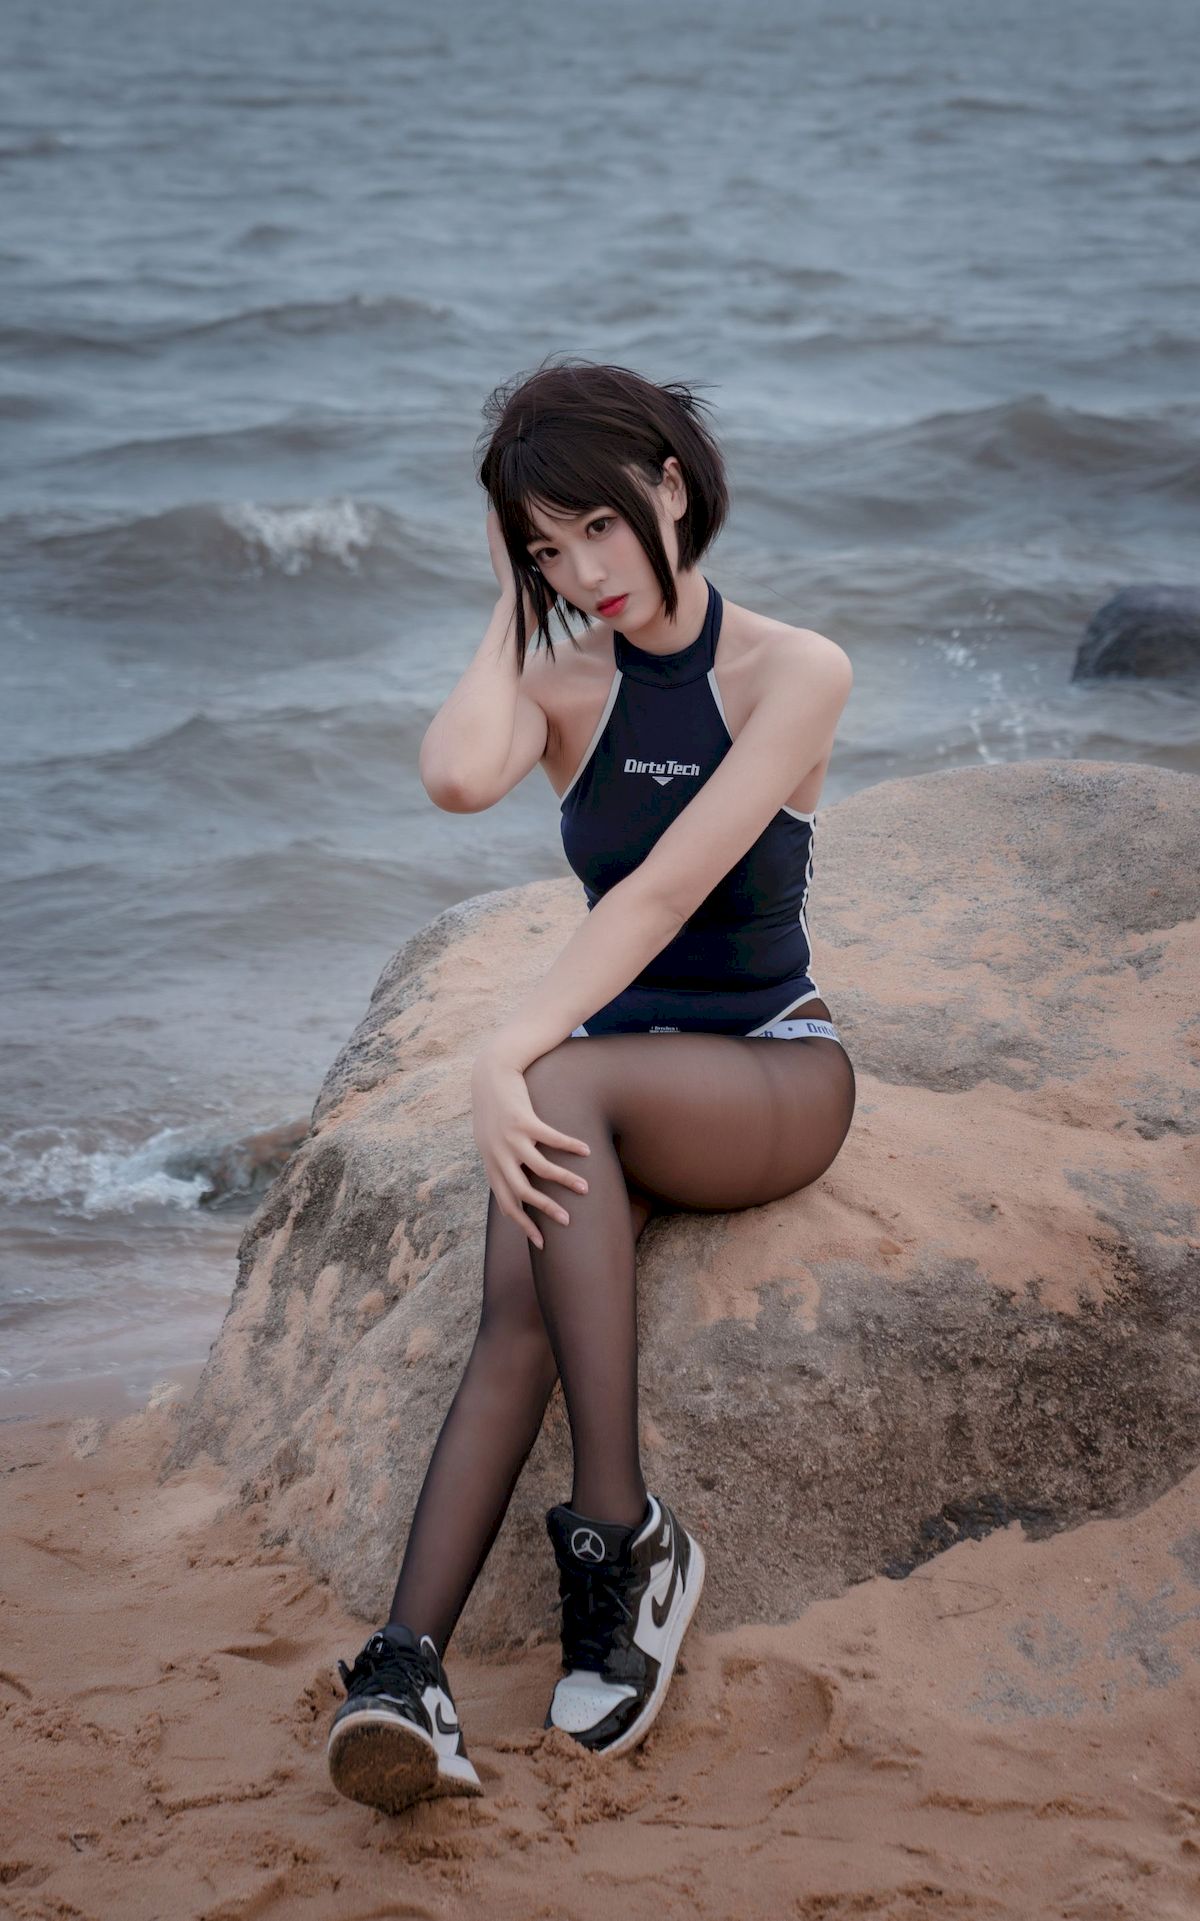 轩萧学姐黑丝美腿沙滩竞泳主题户外写真